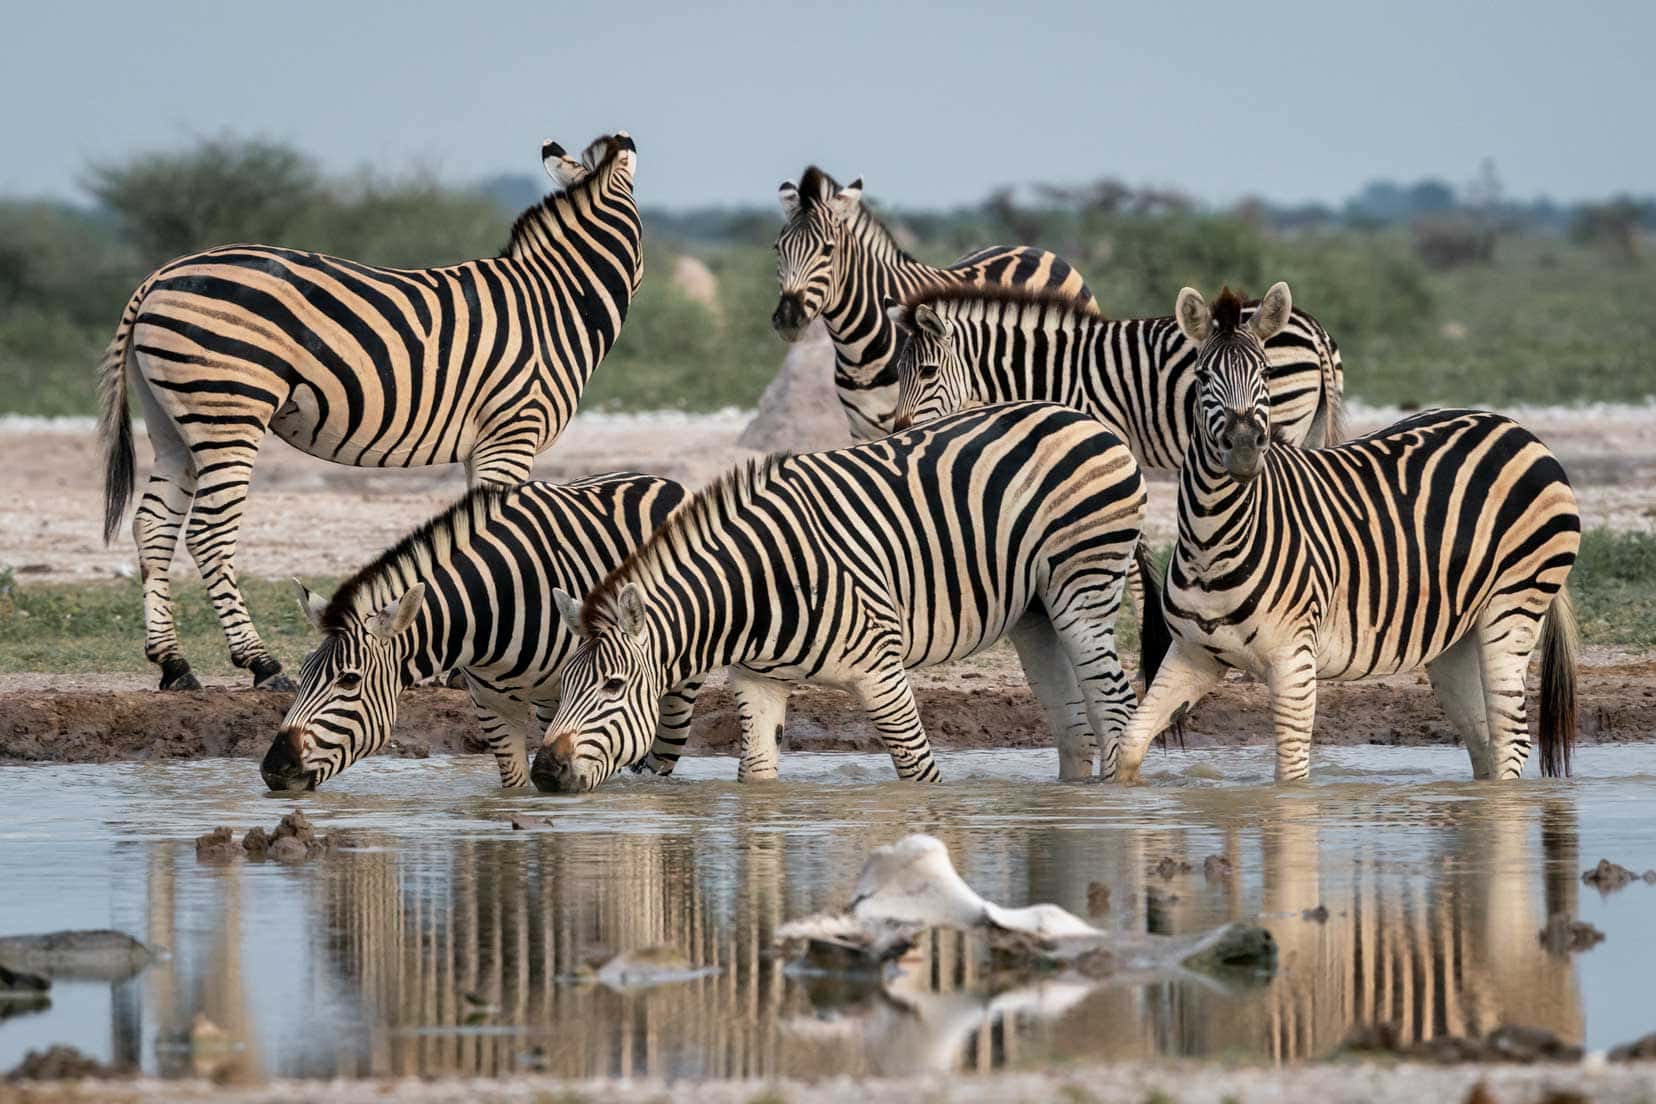 zebra by waterhole at Nxai pans